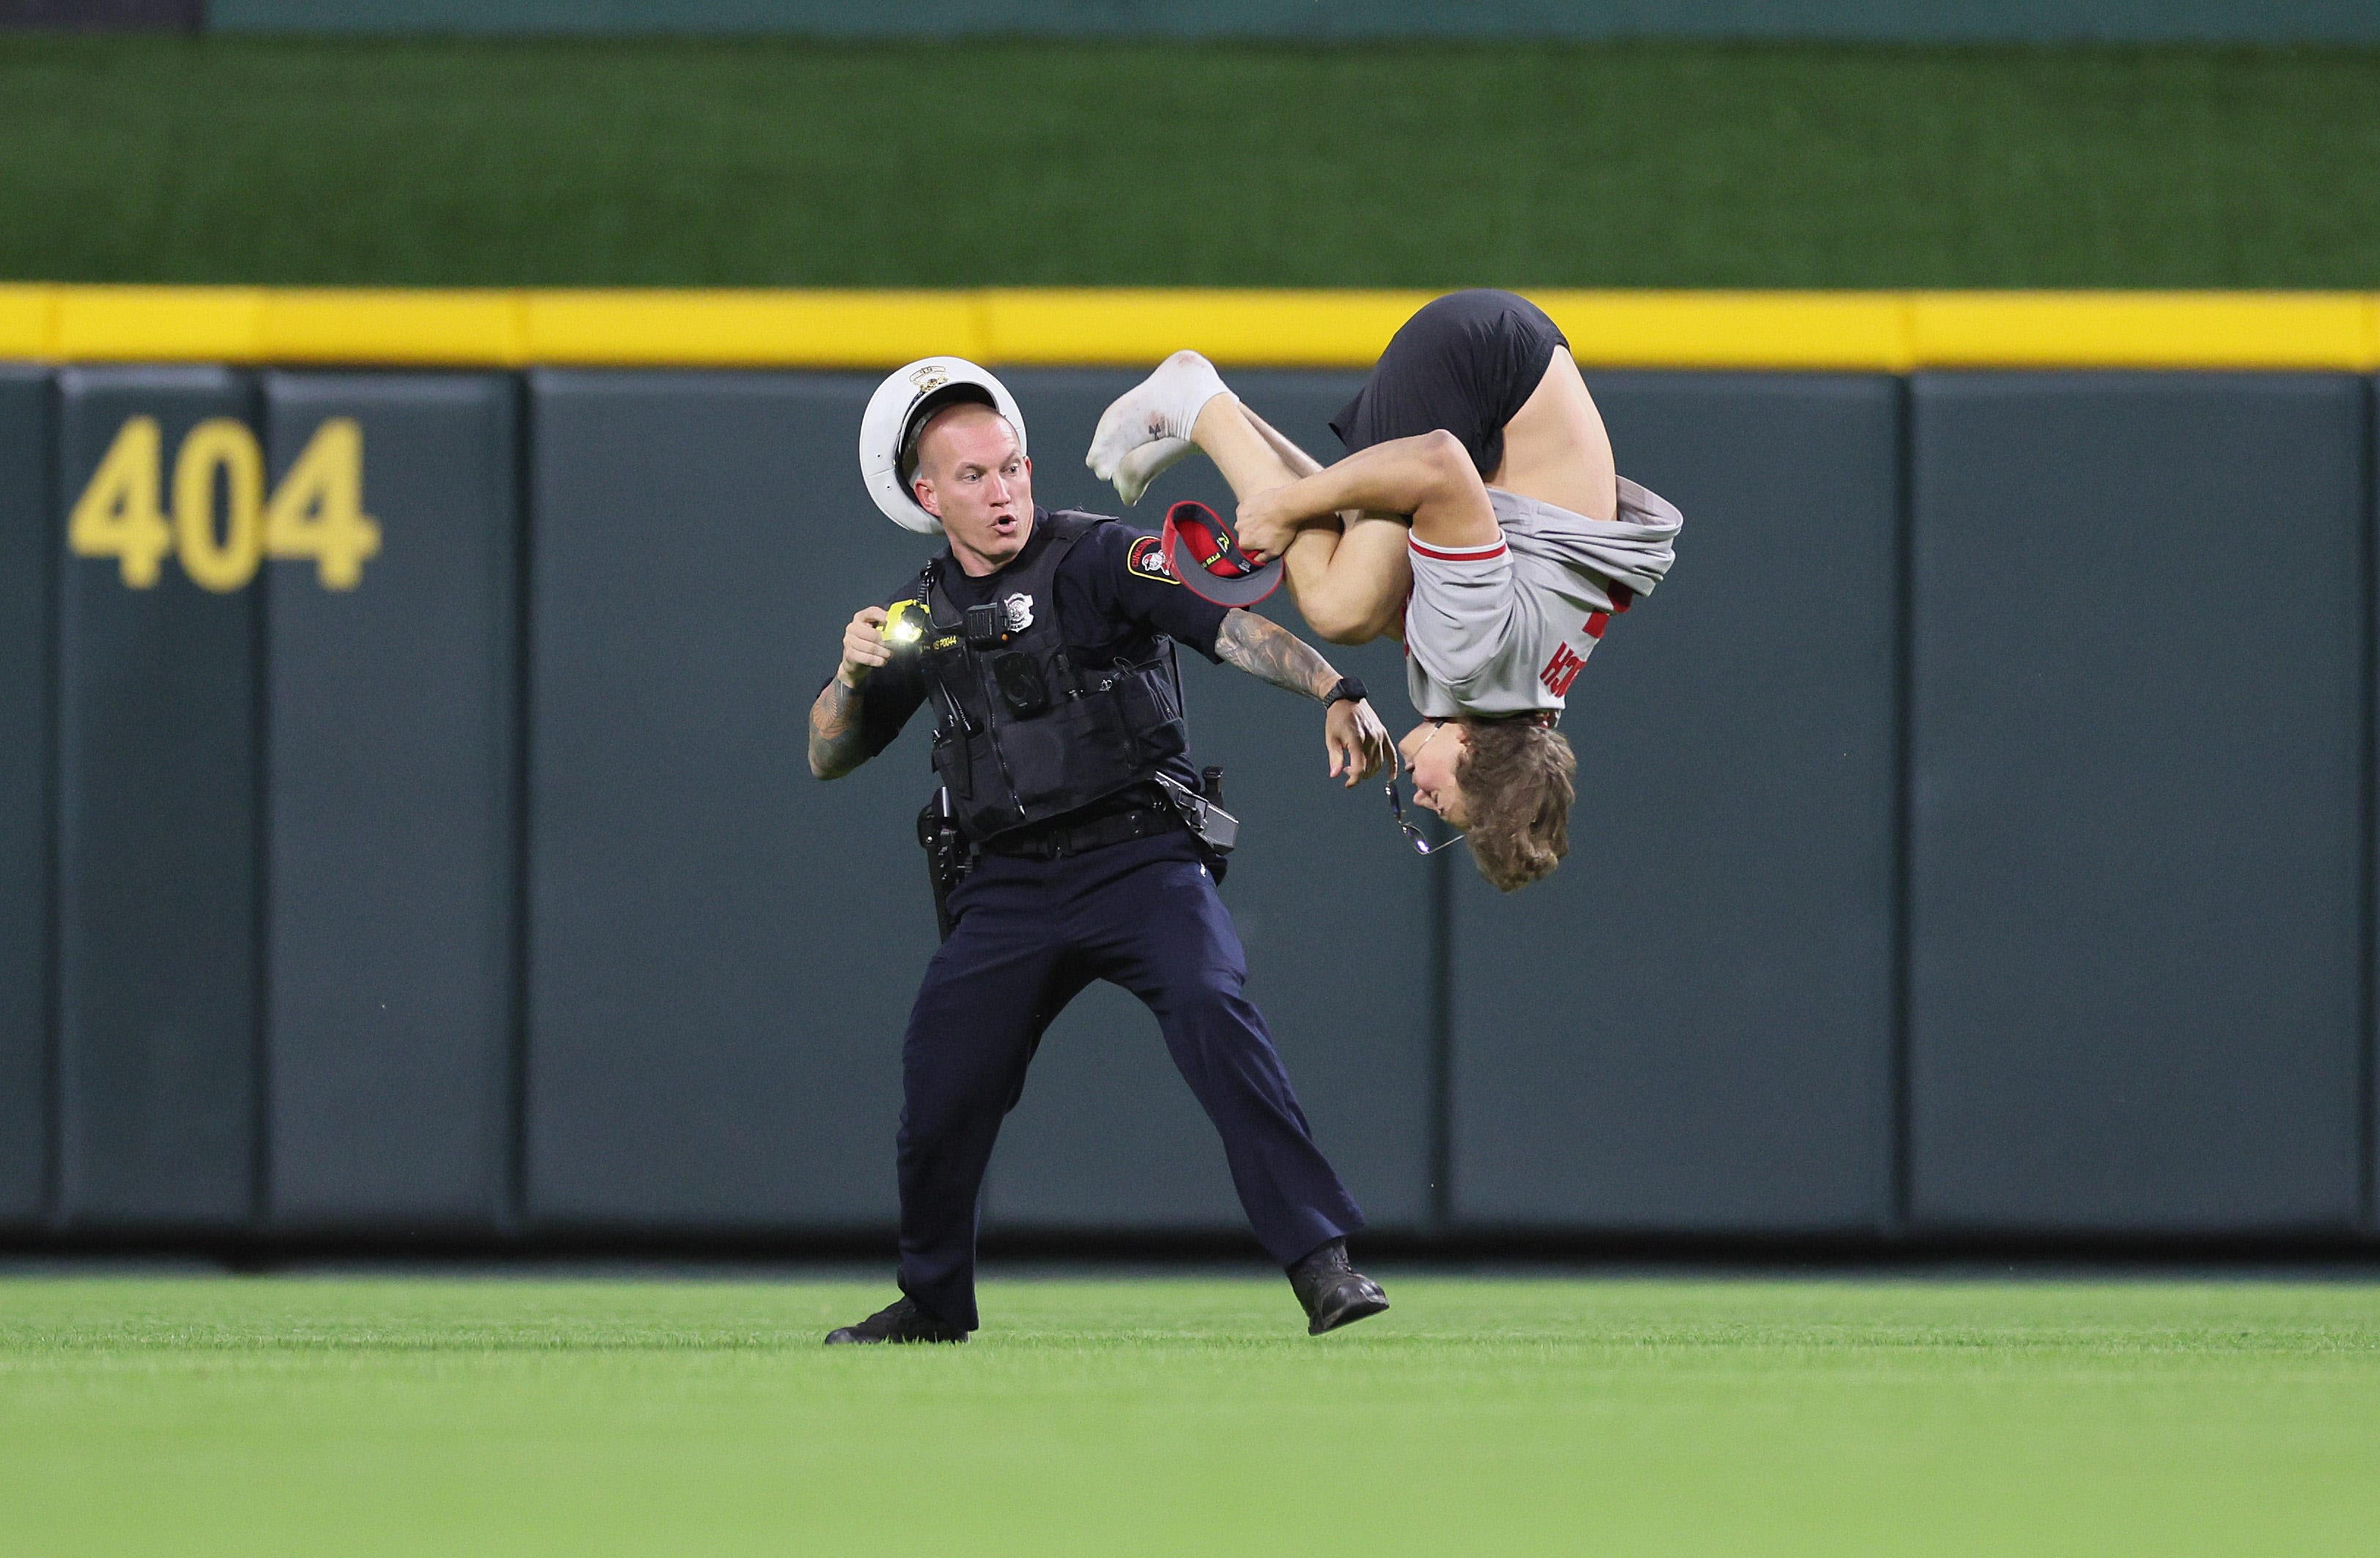 Cincinnati police overreacted to Reds' fan's backflip by using Taser